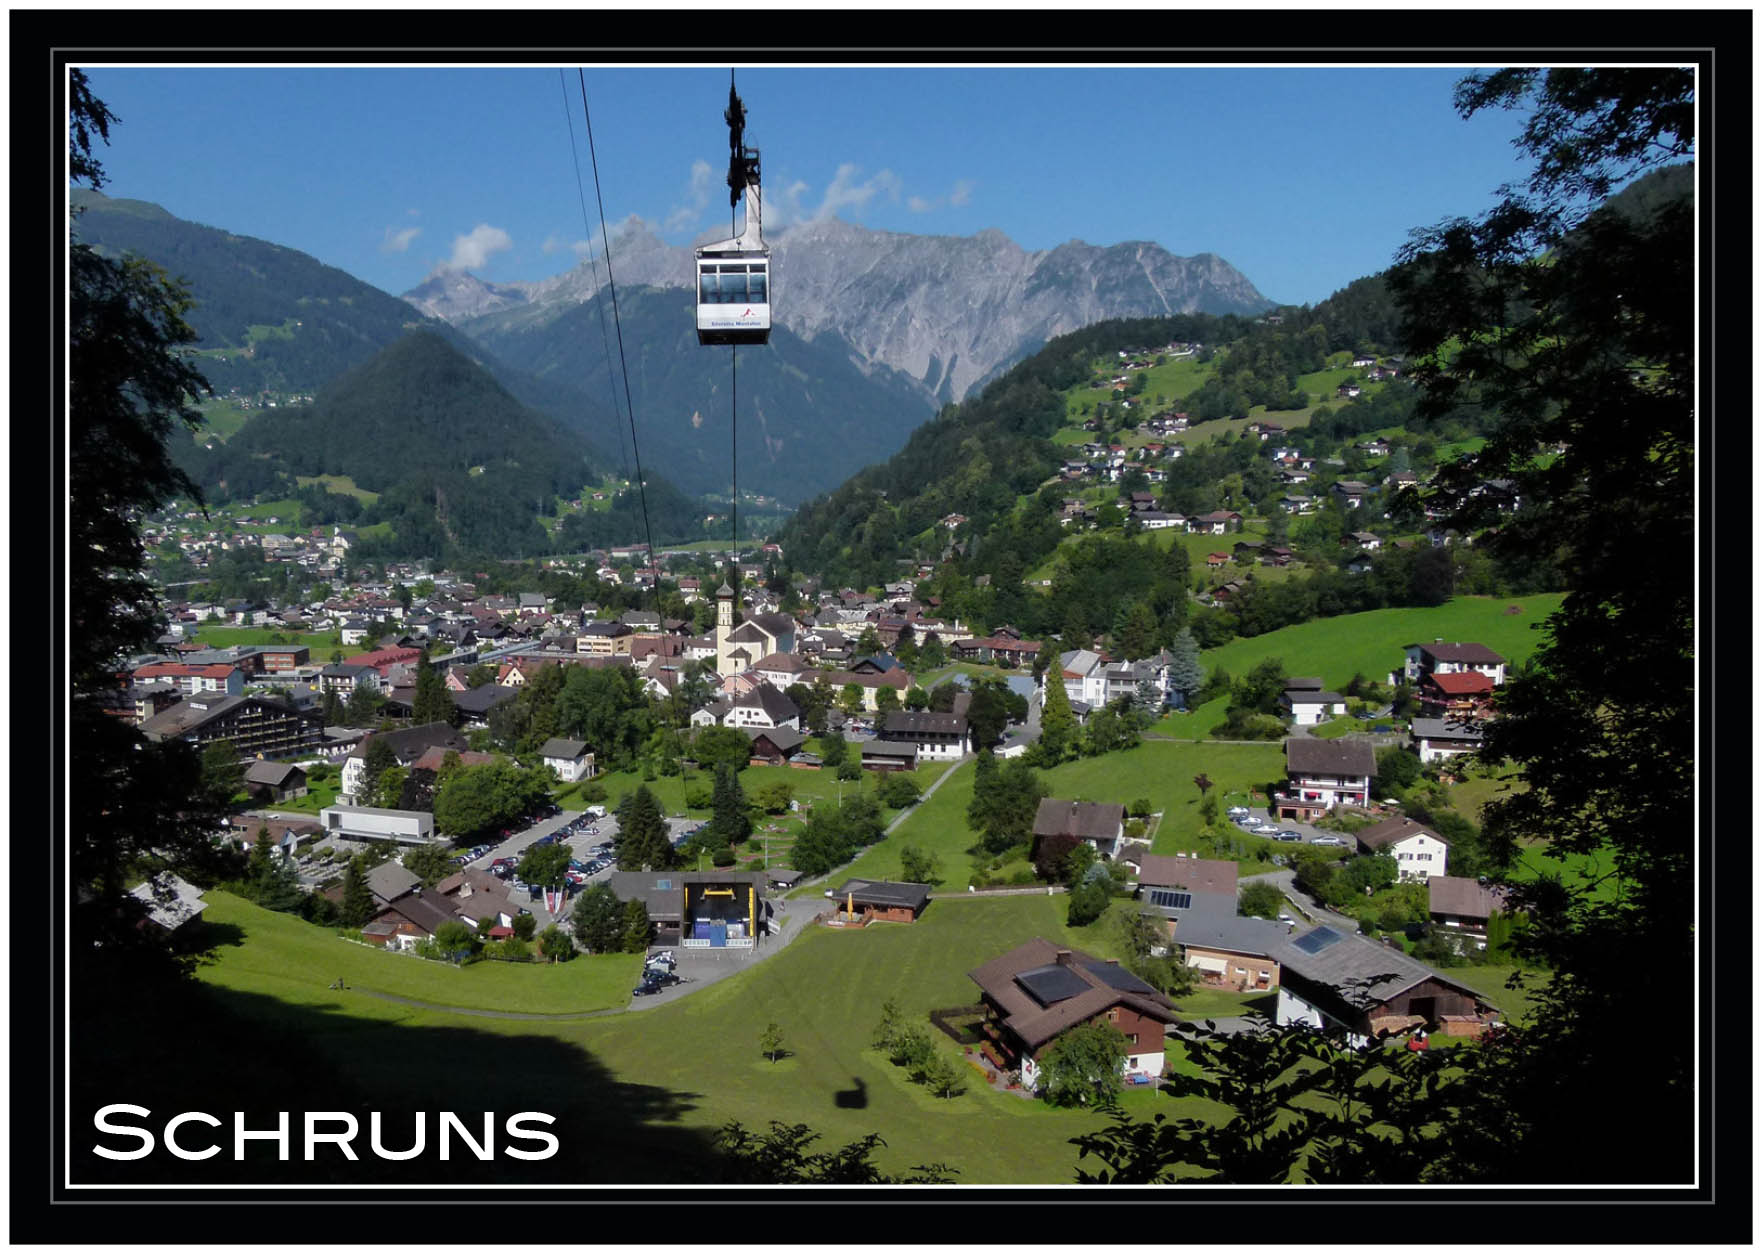 Schruns im Montafon gegen Zimba und Vandanser Steinwand, Vorarlberg, Österreich